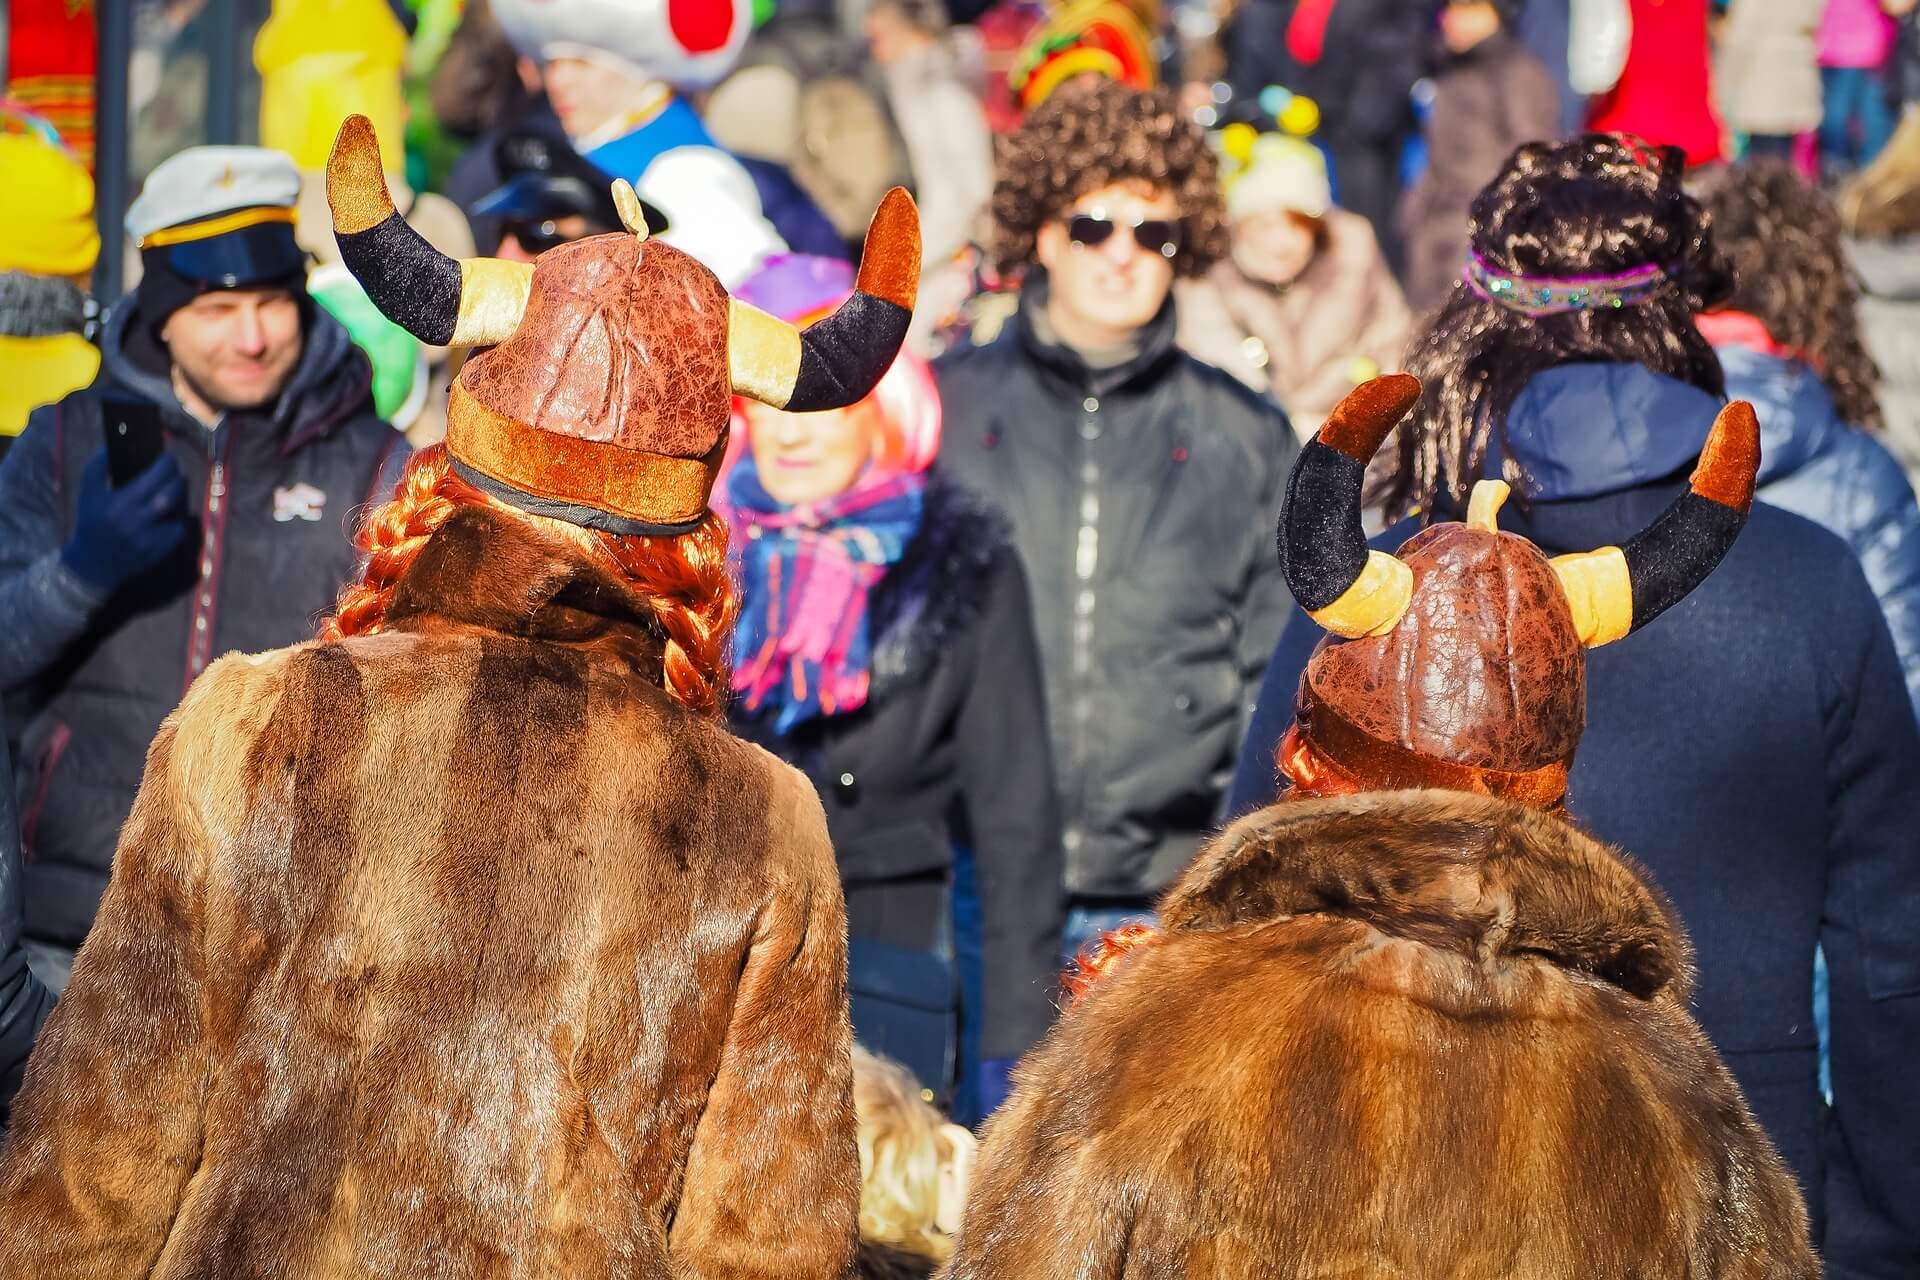 Während des Karnevals in Köln soll es angeblich „Hetzjagden“ von Migranten auf Deutsche gegeben haben, berichtet ein Augenzeuge. Die Polizei kann das nicht bestätigen. (Symbolbild: Pixabay / MichaelGaida)